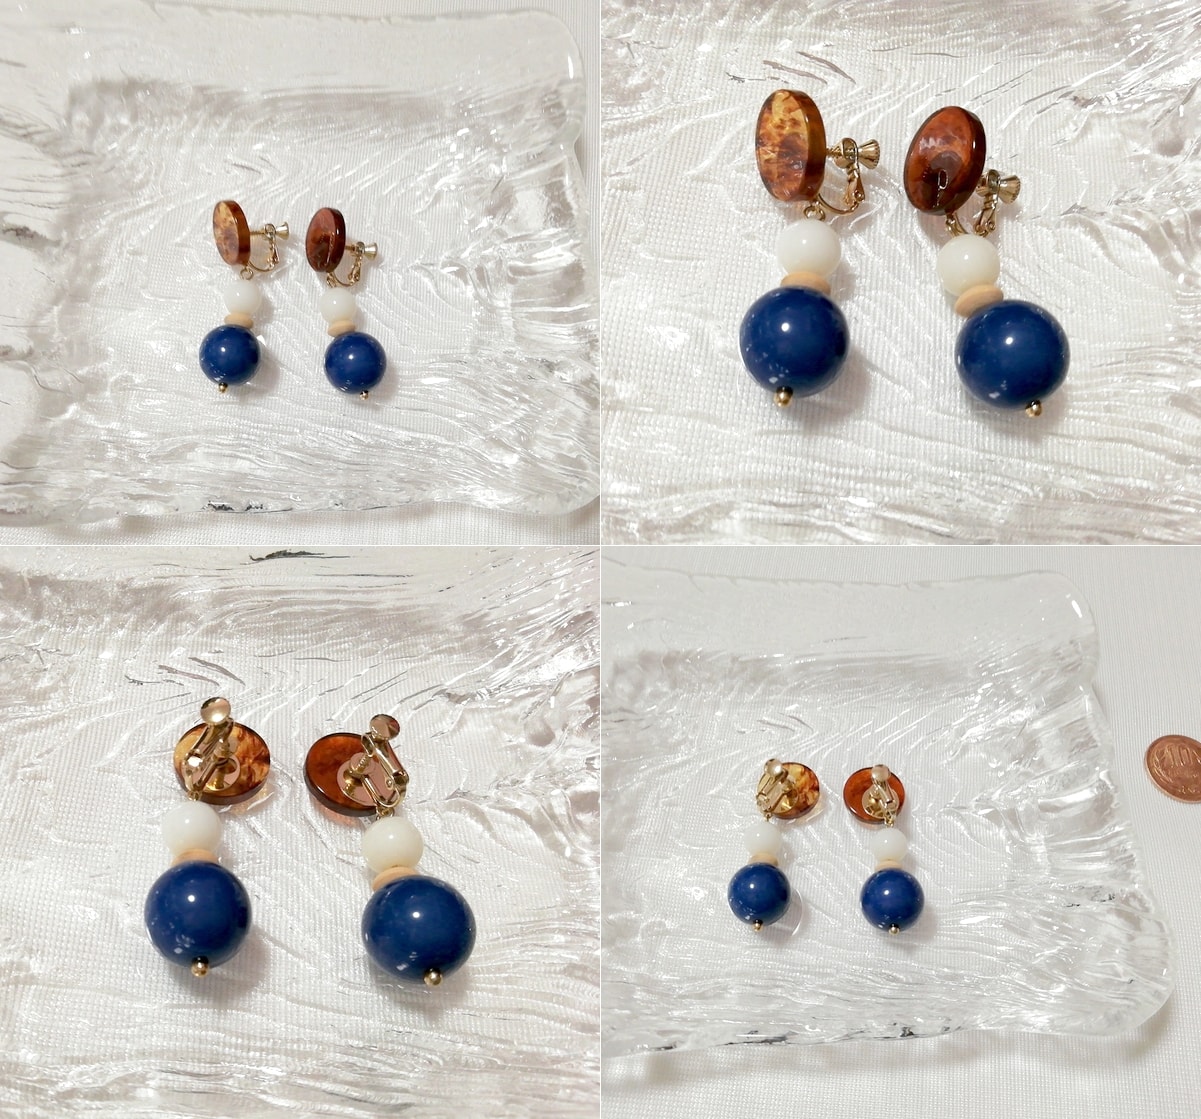 茶白青丸型3段揺れるロングイヤリング/ジュエリー/アクセサリー Brown white blue round 3-stage swaying long earrings jewelry, レディースアクセサリー, イヤリング, その他